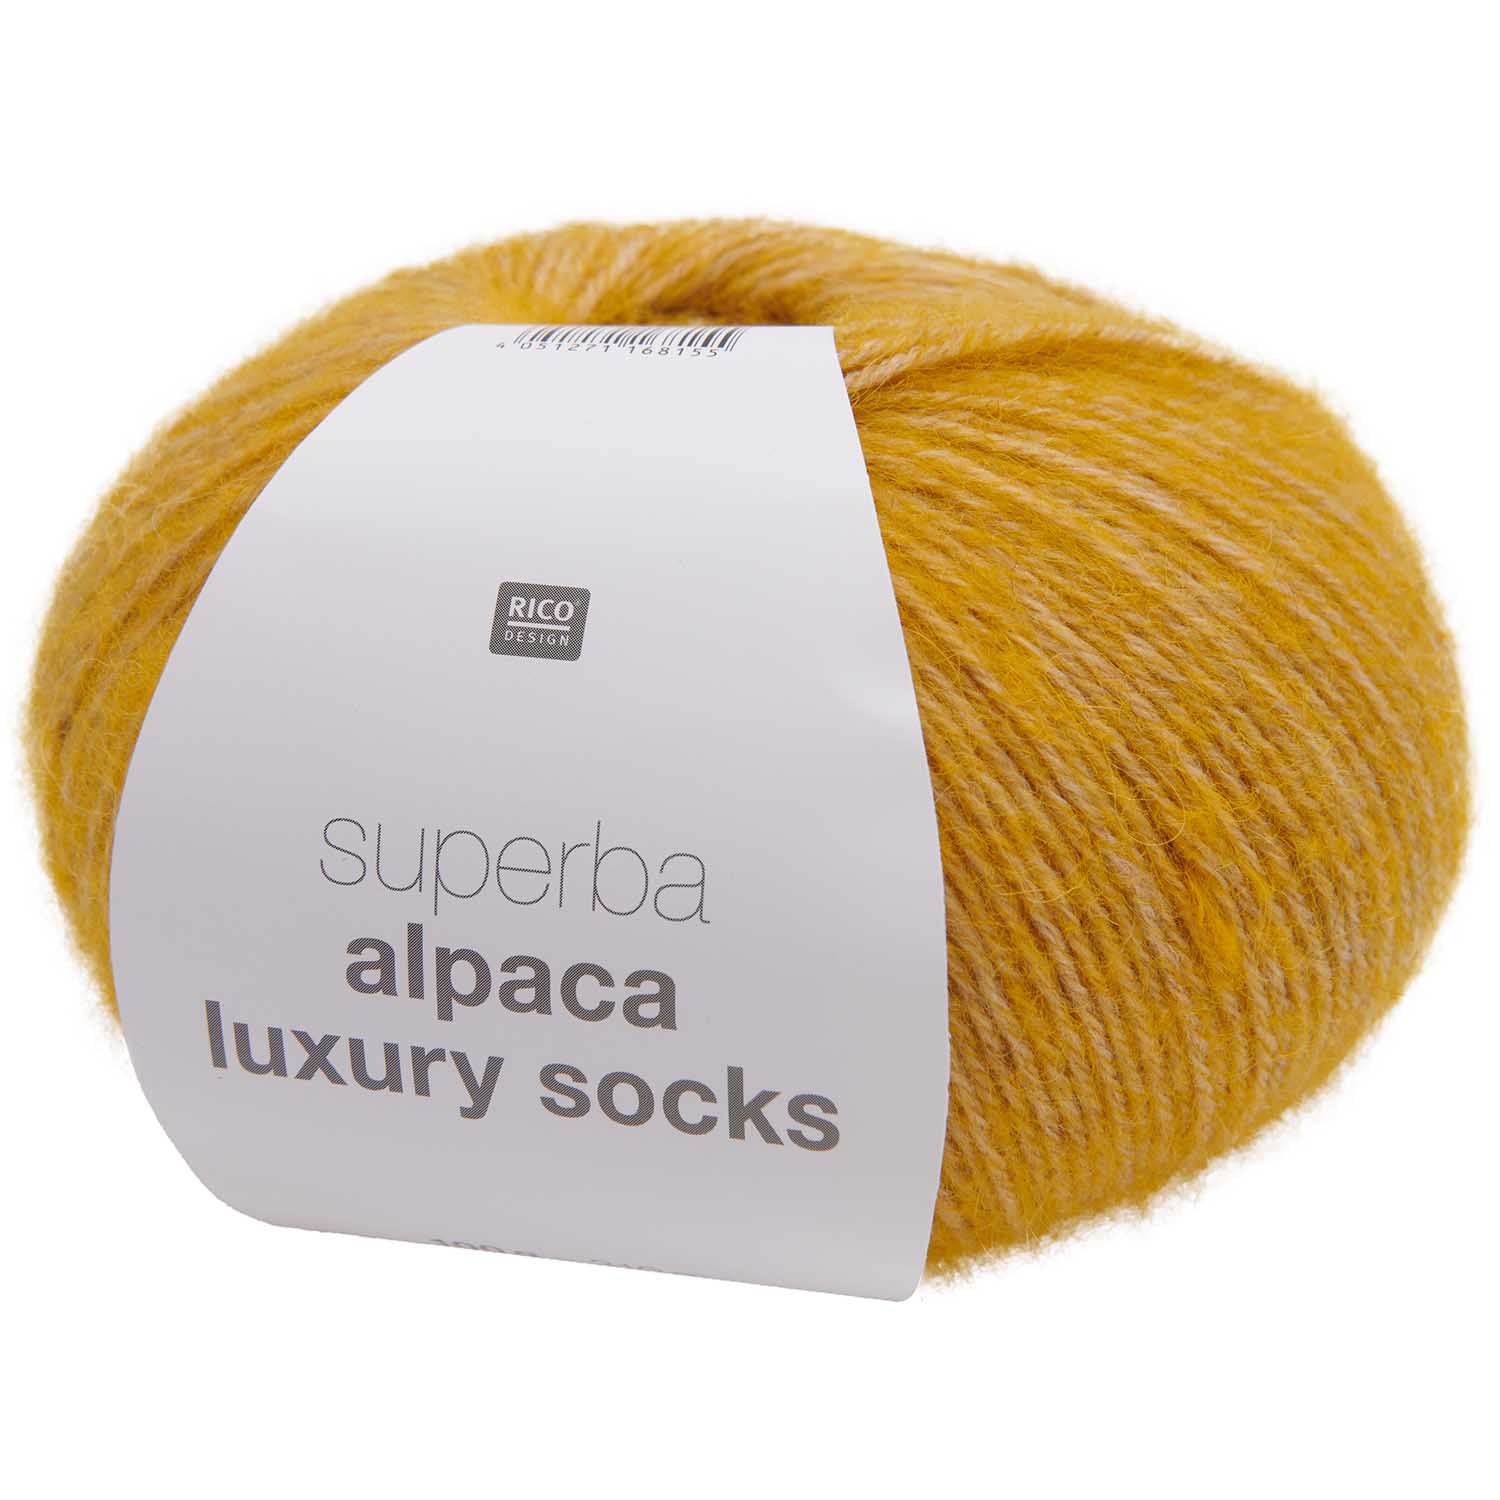 Alpaca luxury socks - hořčičná